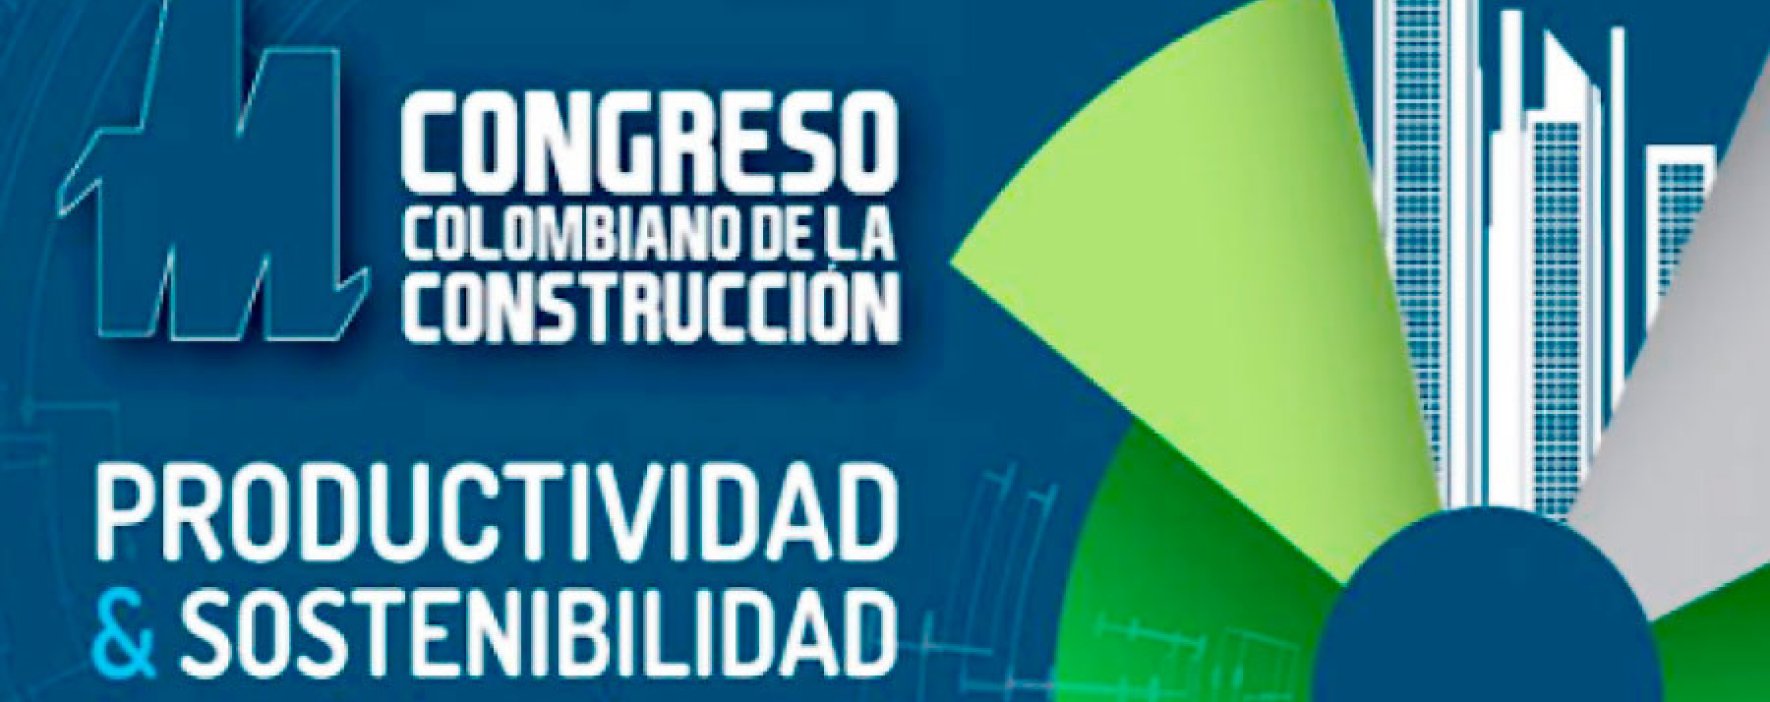 El Congreso Colombiano de la Construcción calienta motores